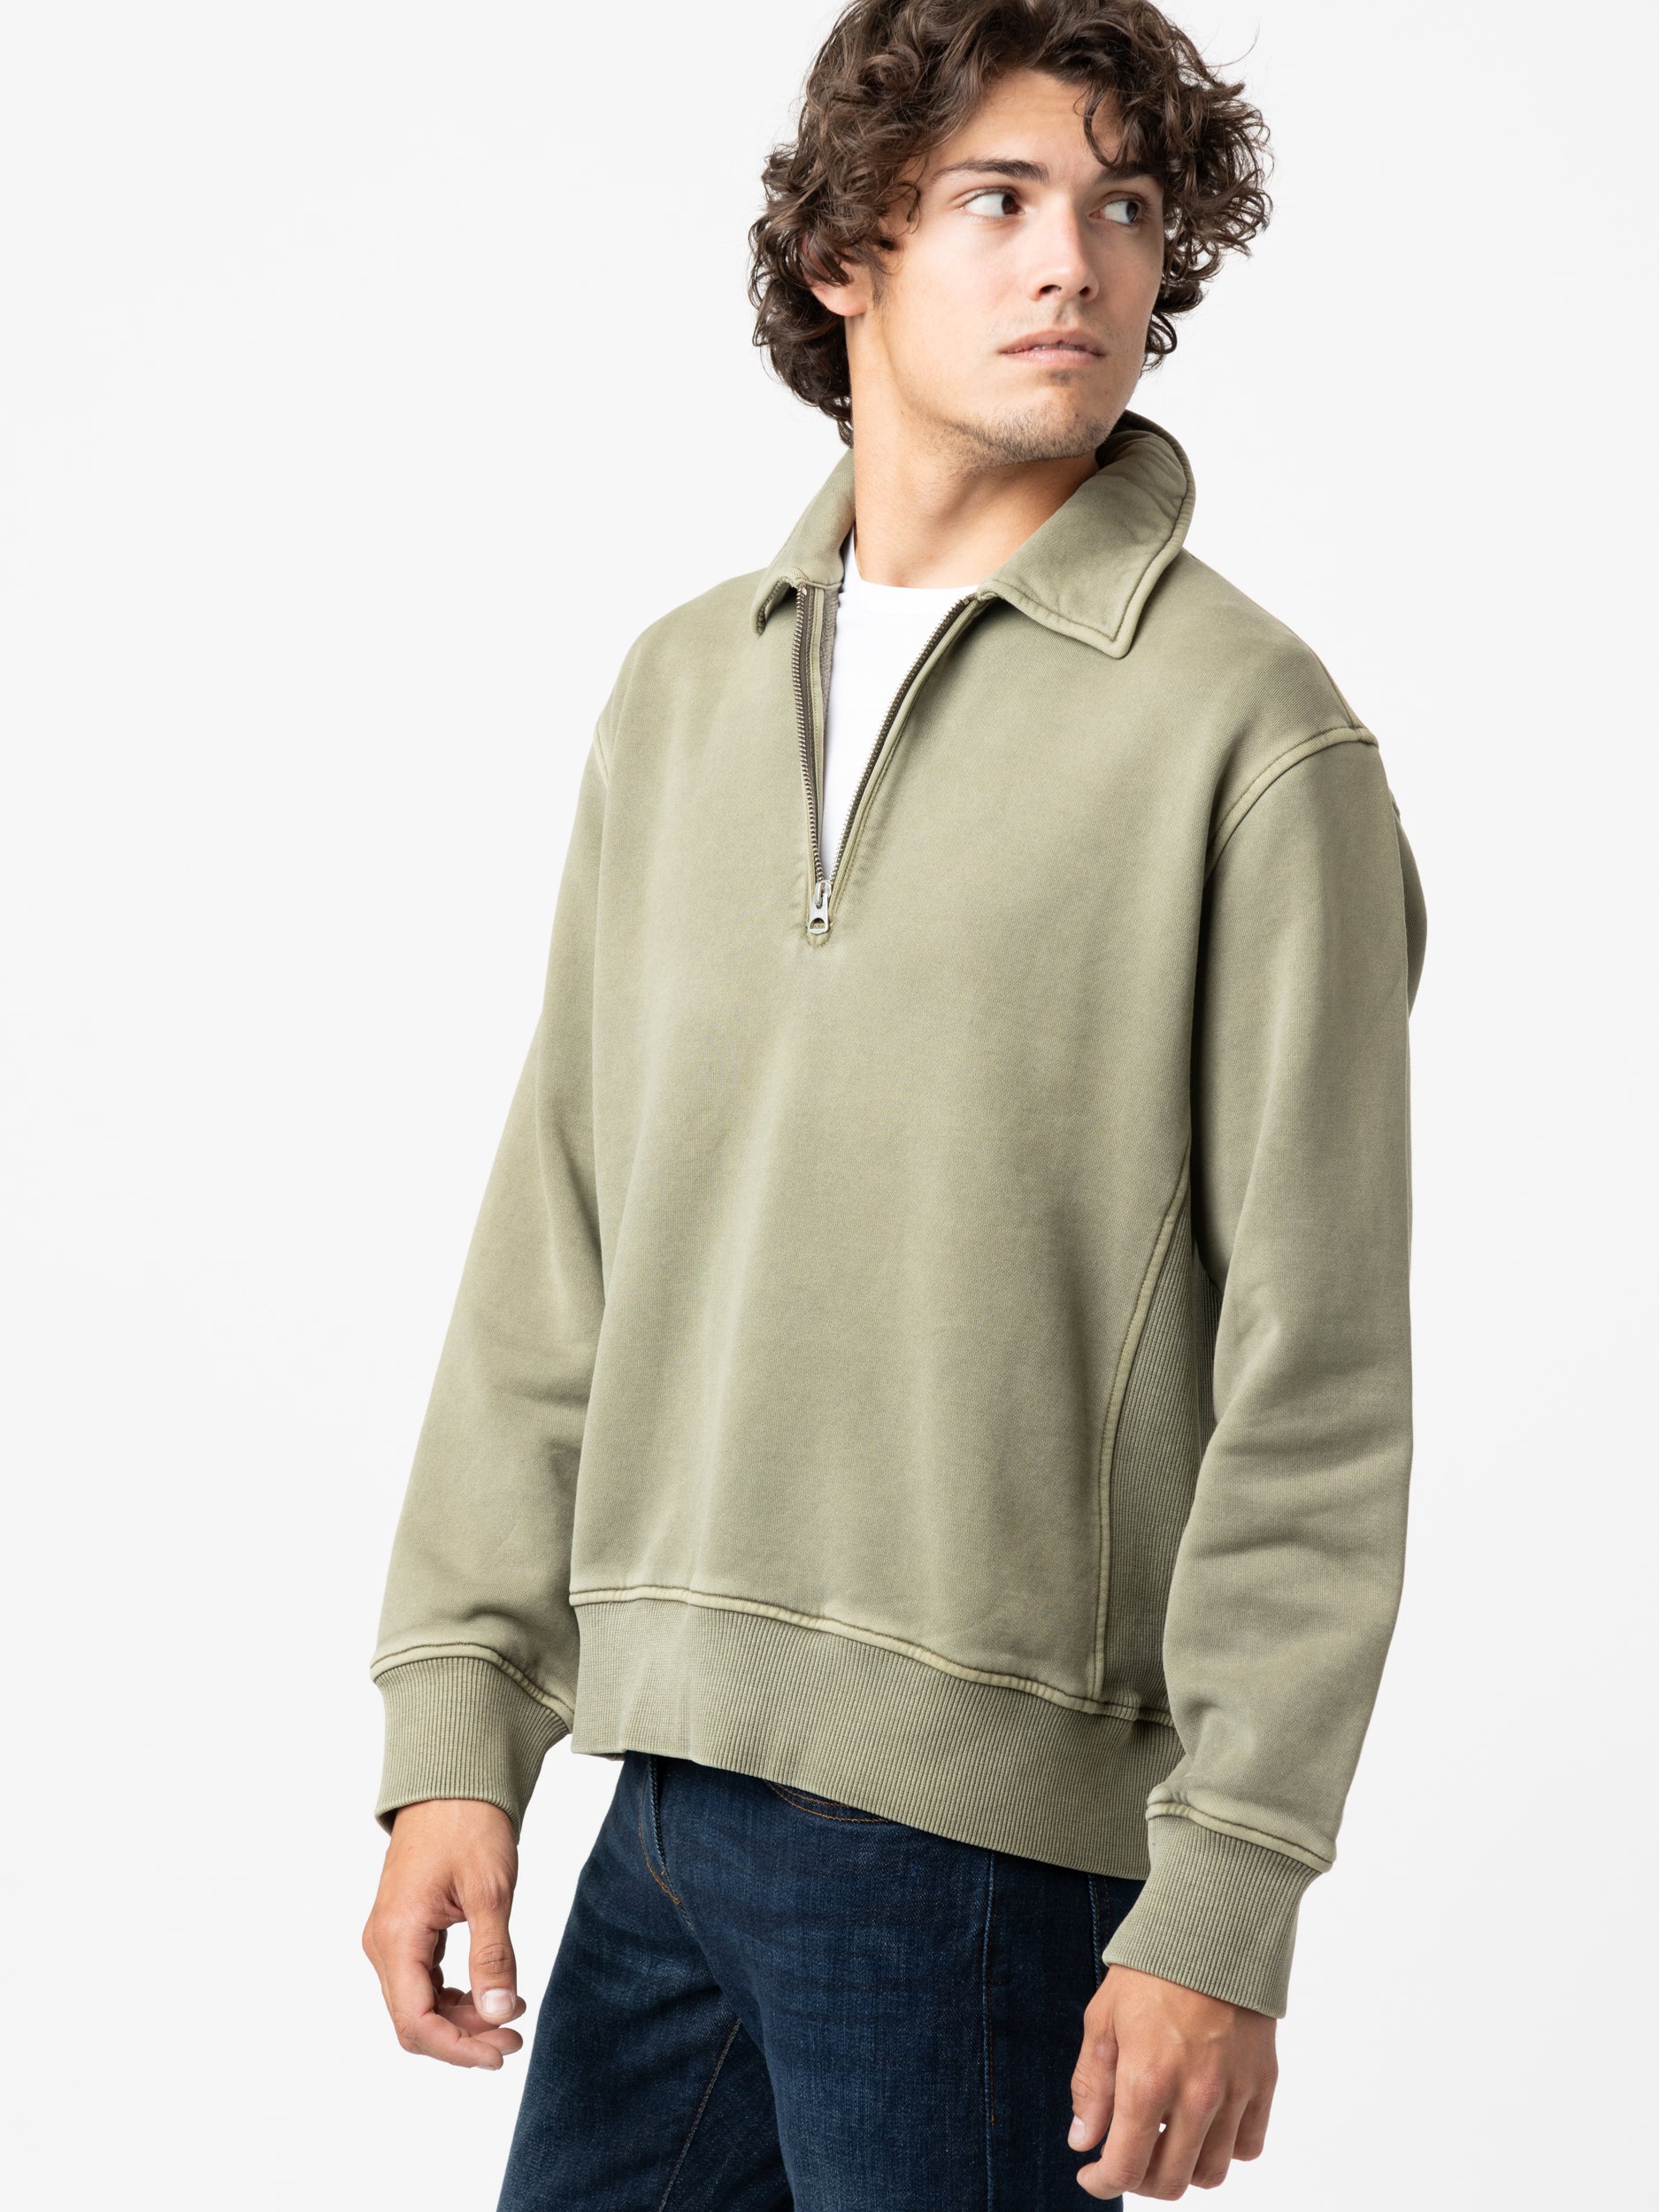 Olive Green Som Half Zip Sweatshirt in Fleece – The Helm Clothing